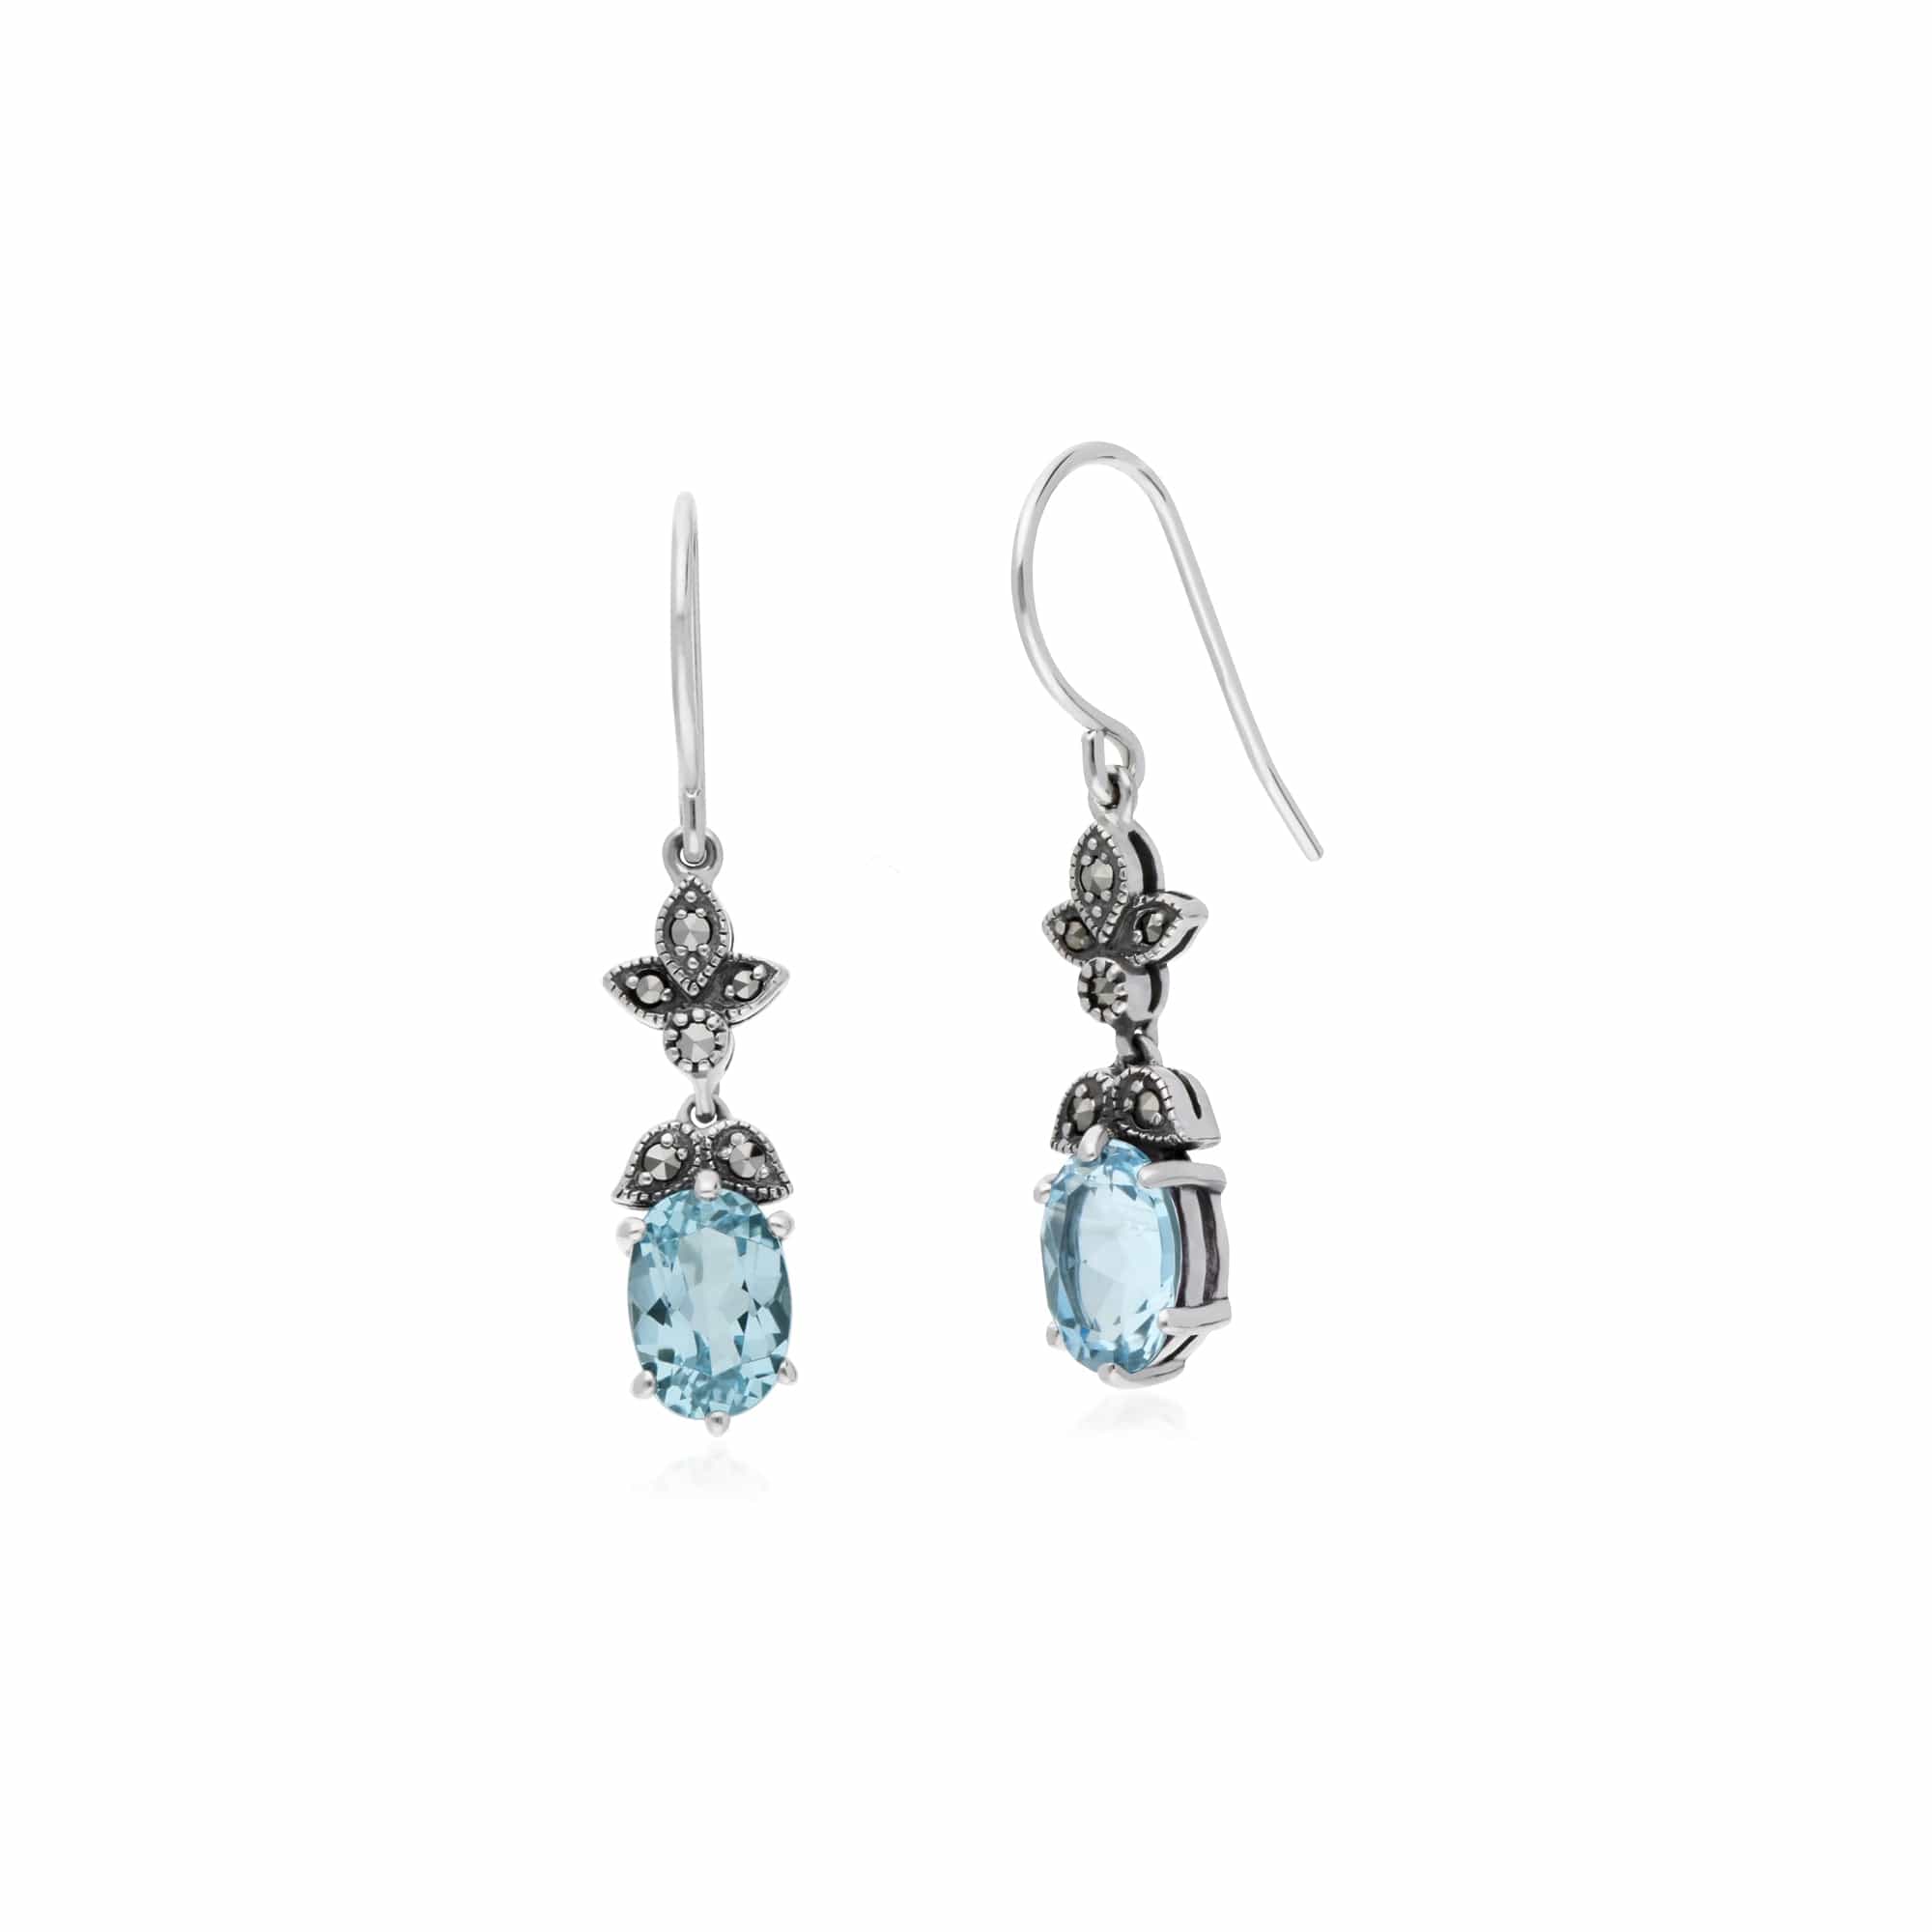 214E861103925 Art Nouveau Style Oval Blue Topaz & Marcasite Drop Earrings in 925 Sterling Silver 2